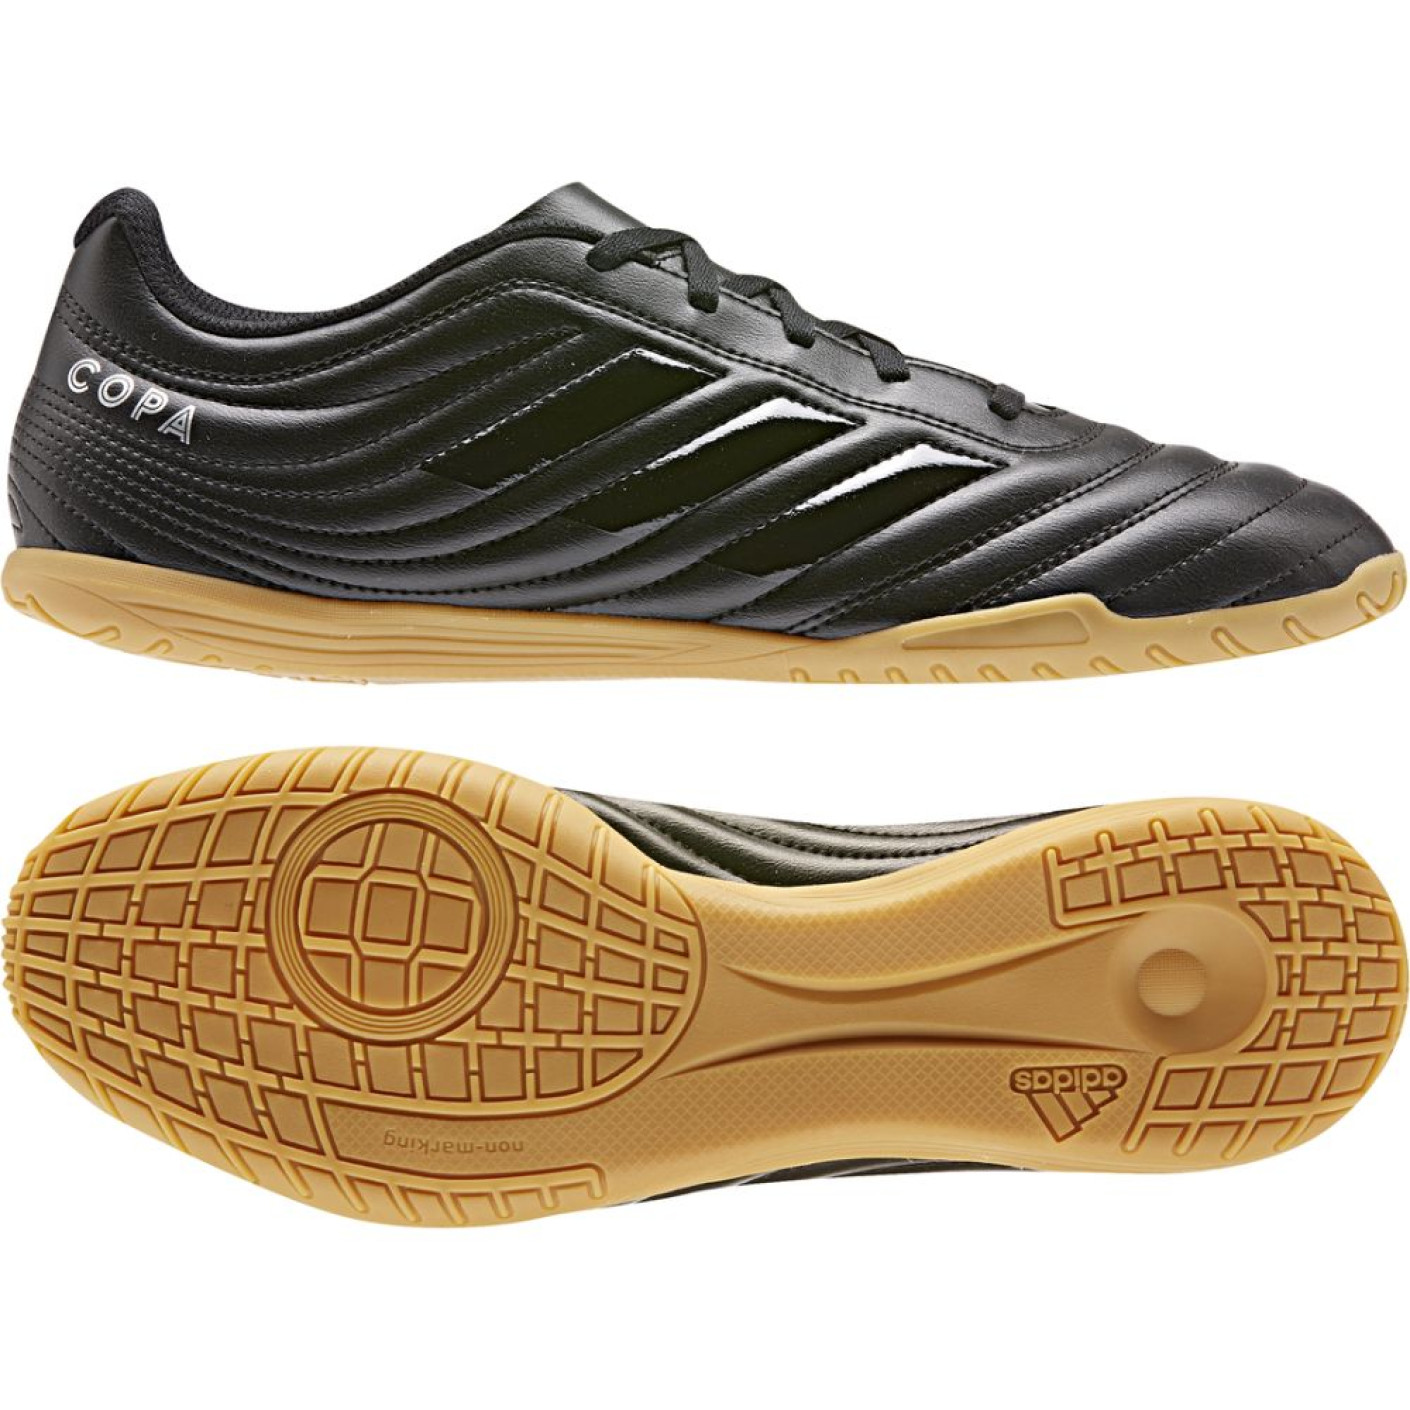 adidas COPA 19.4 Zaalvoetbalschoenen Zwart Zwart Zwart